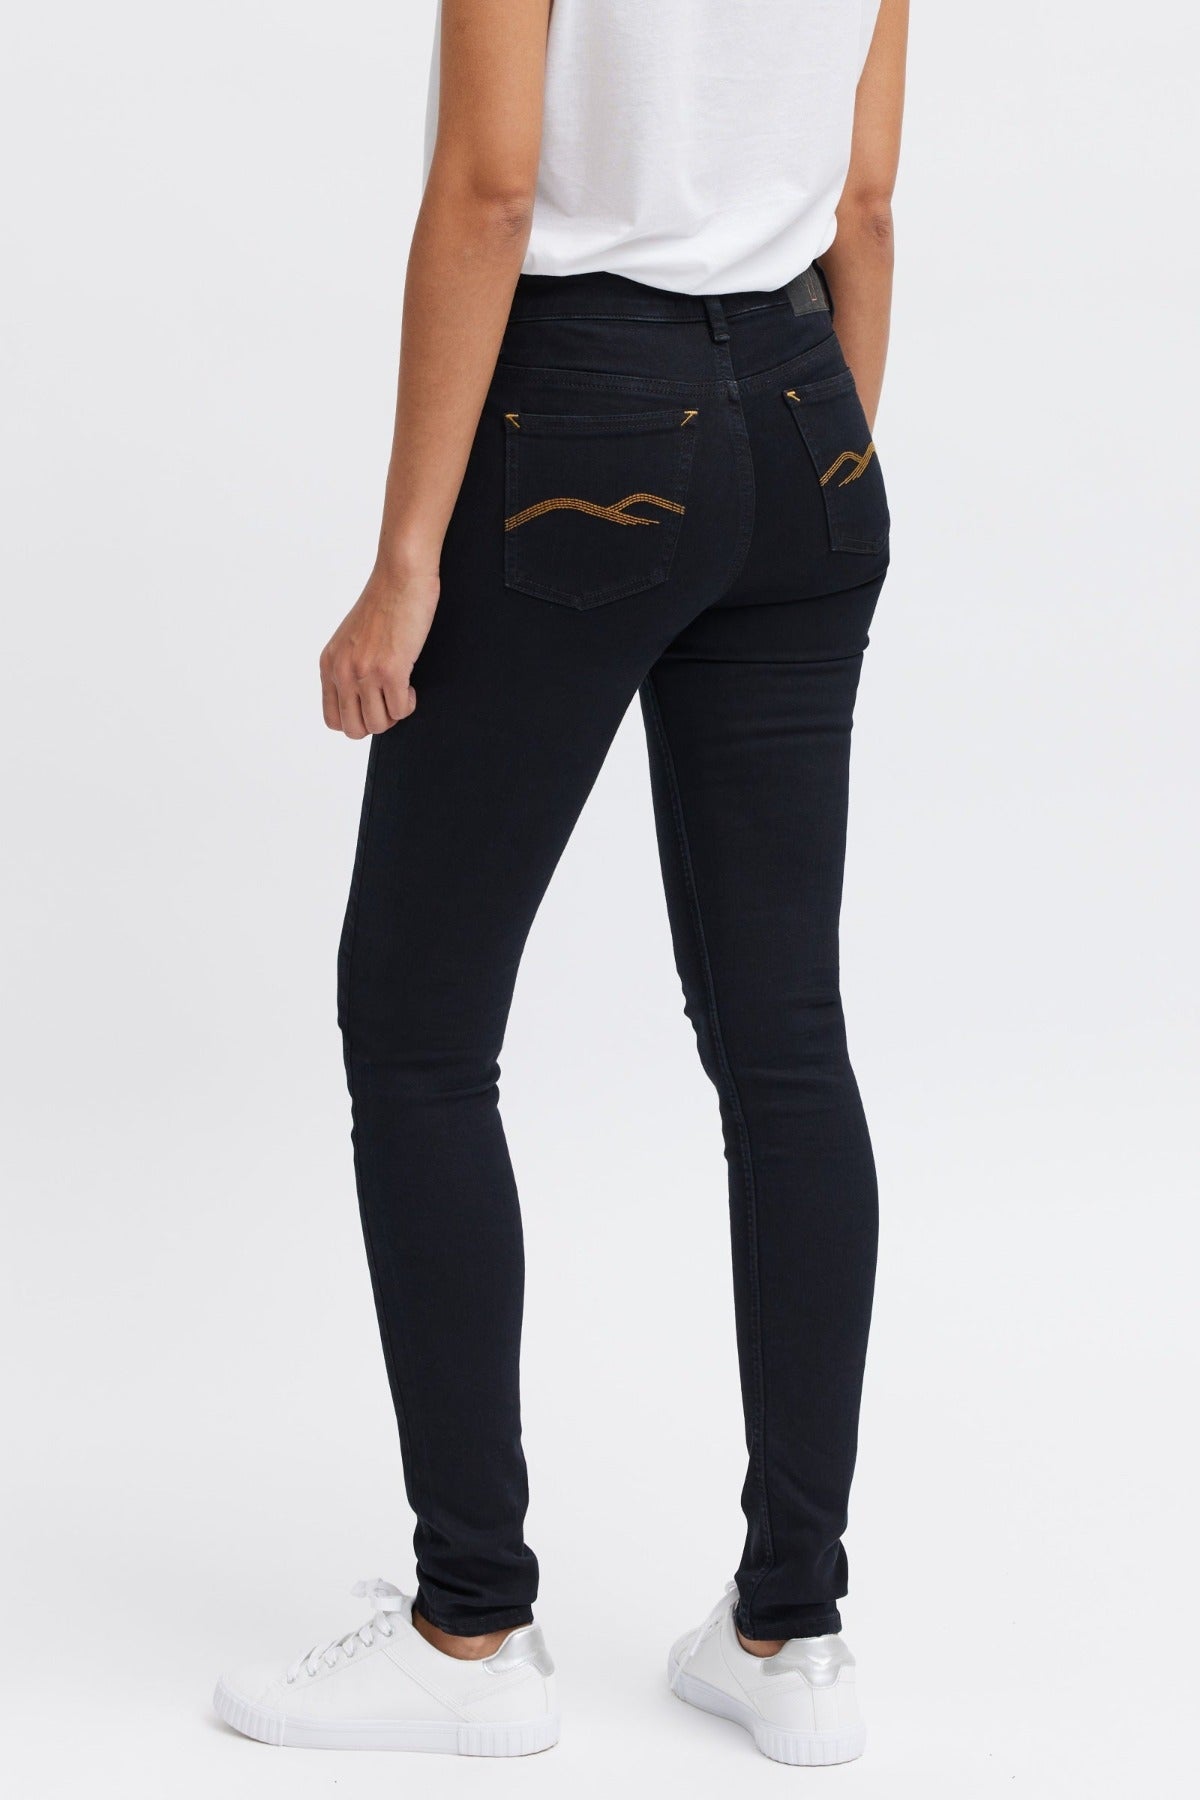 Lease women's black jeans - ORGANSK